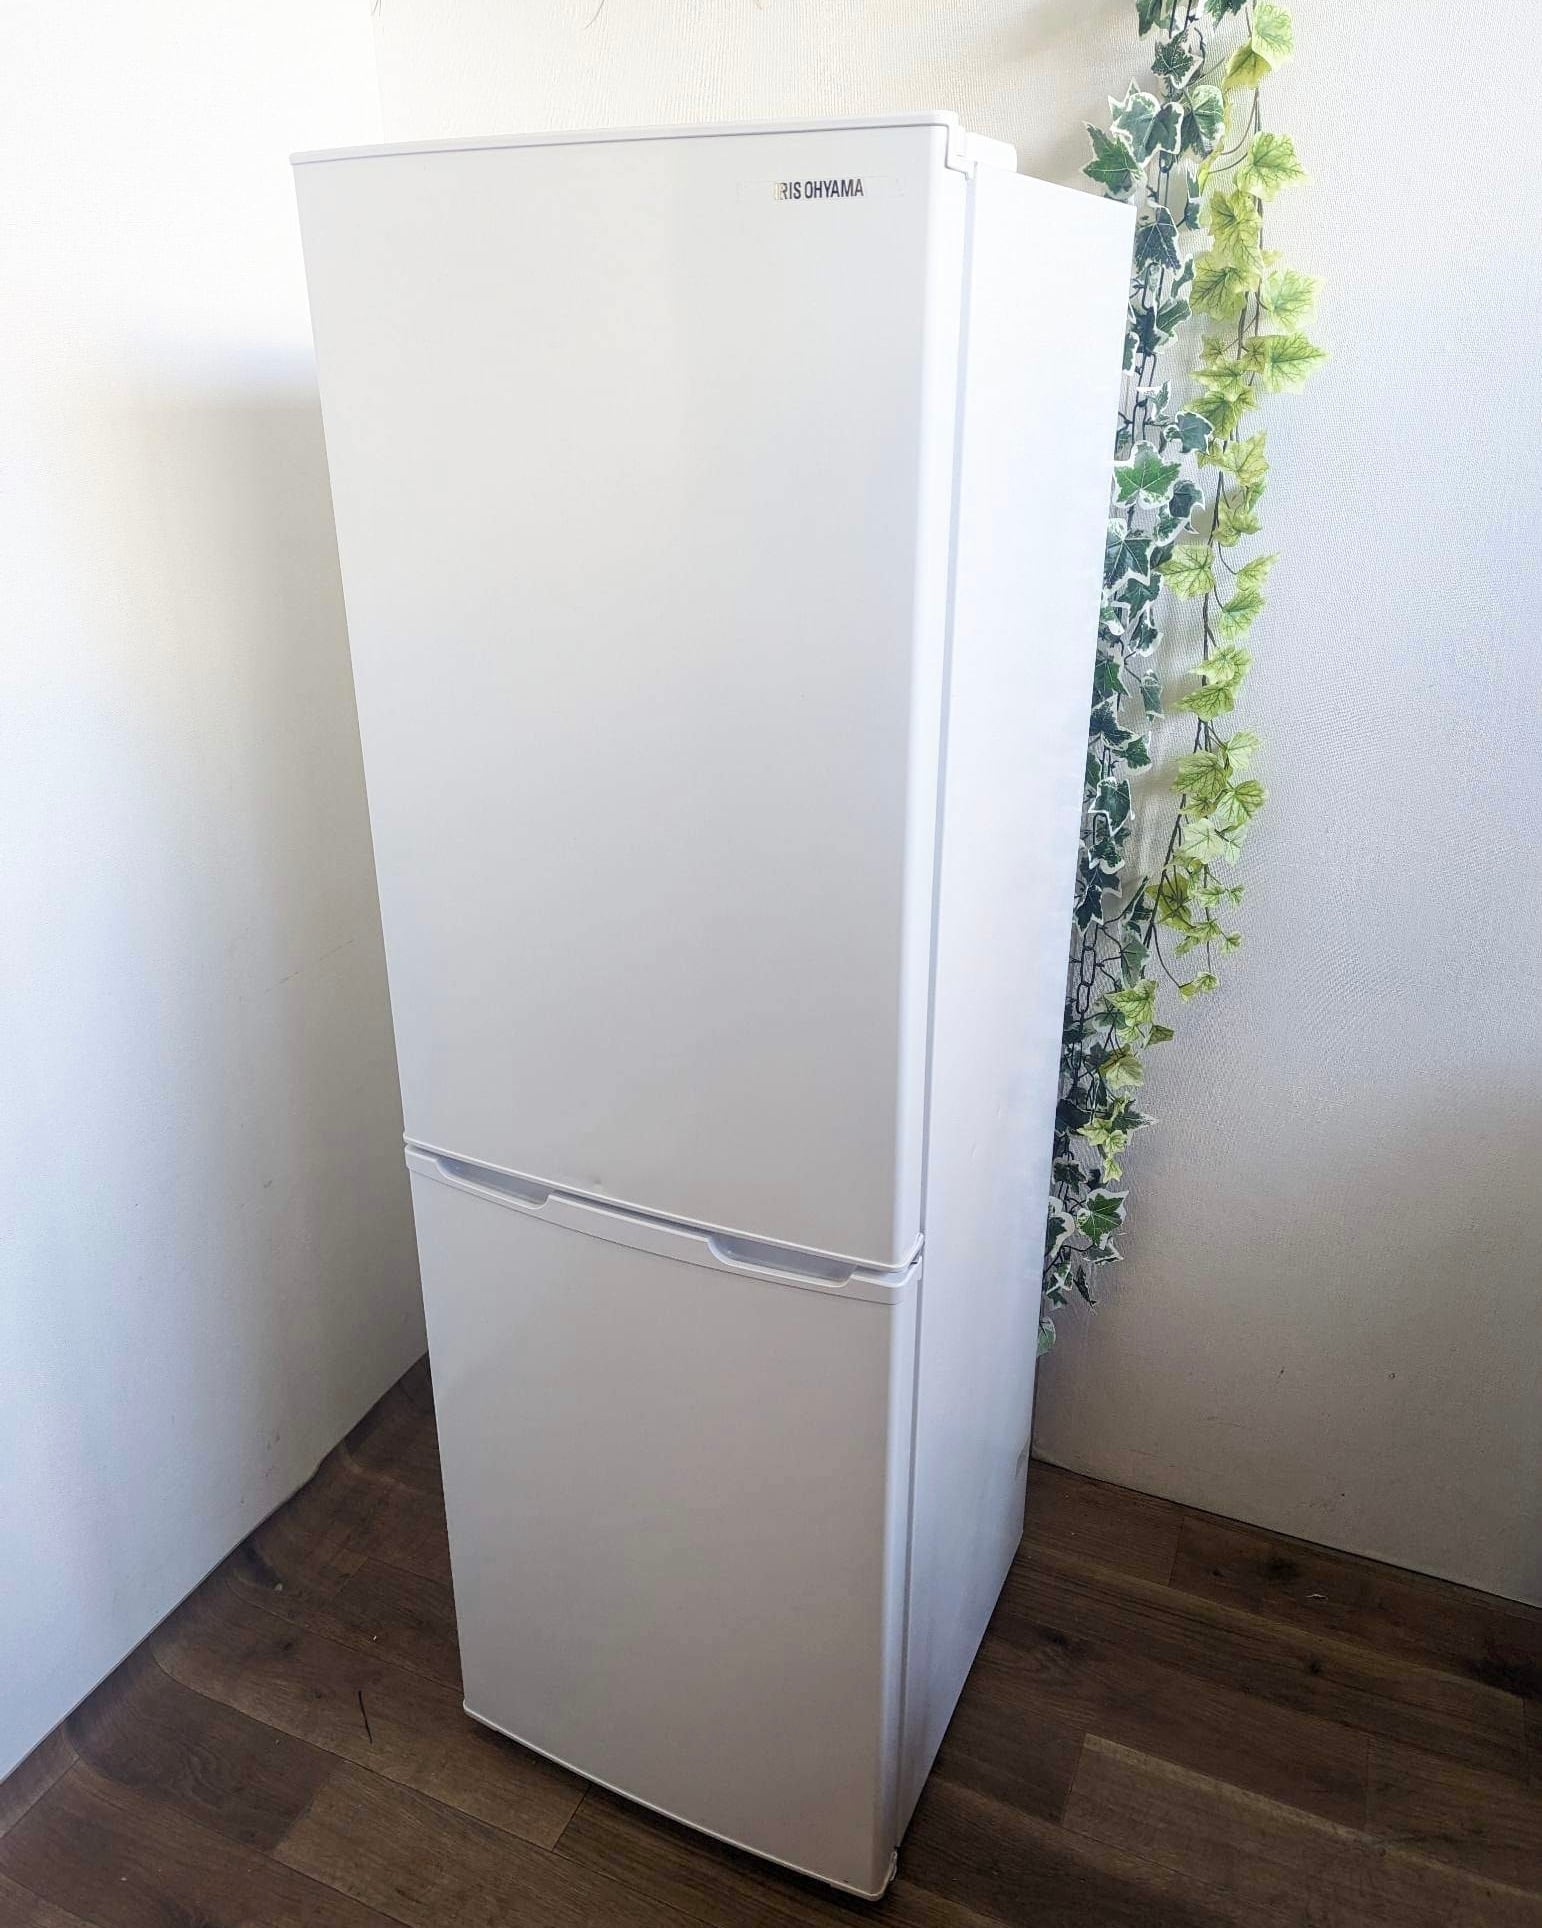 IRISOHYAMA アイリスオーヤマ 冷蔵庫 AF162-W 2020年製 162L